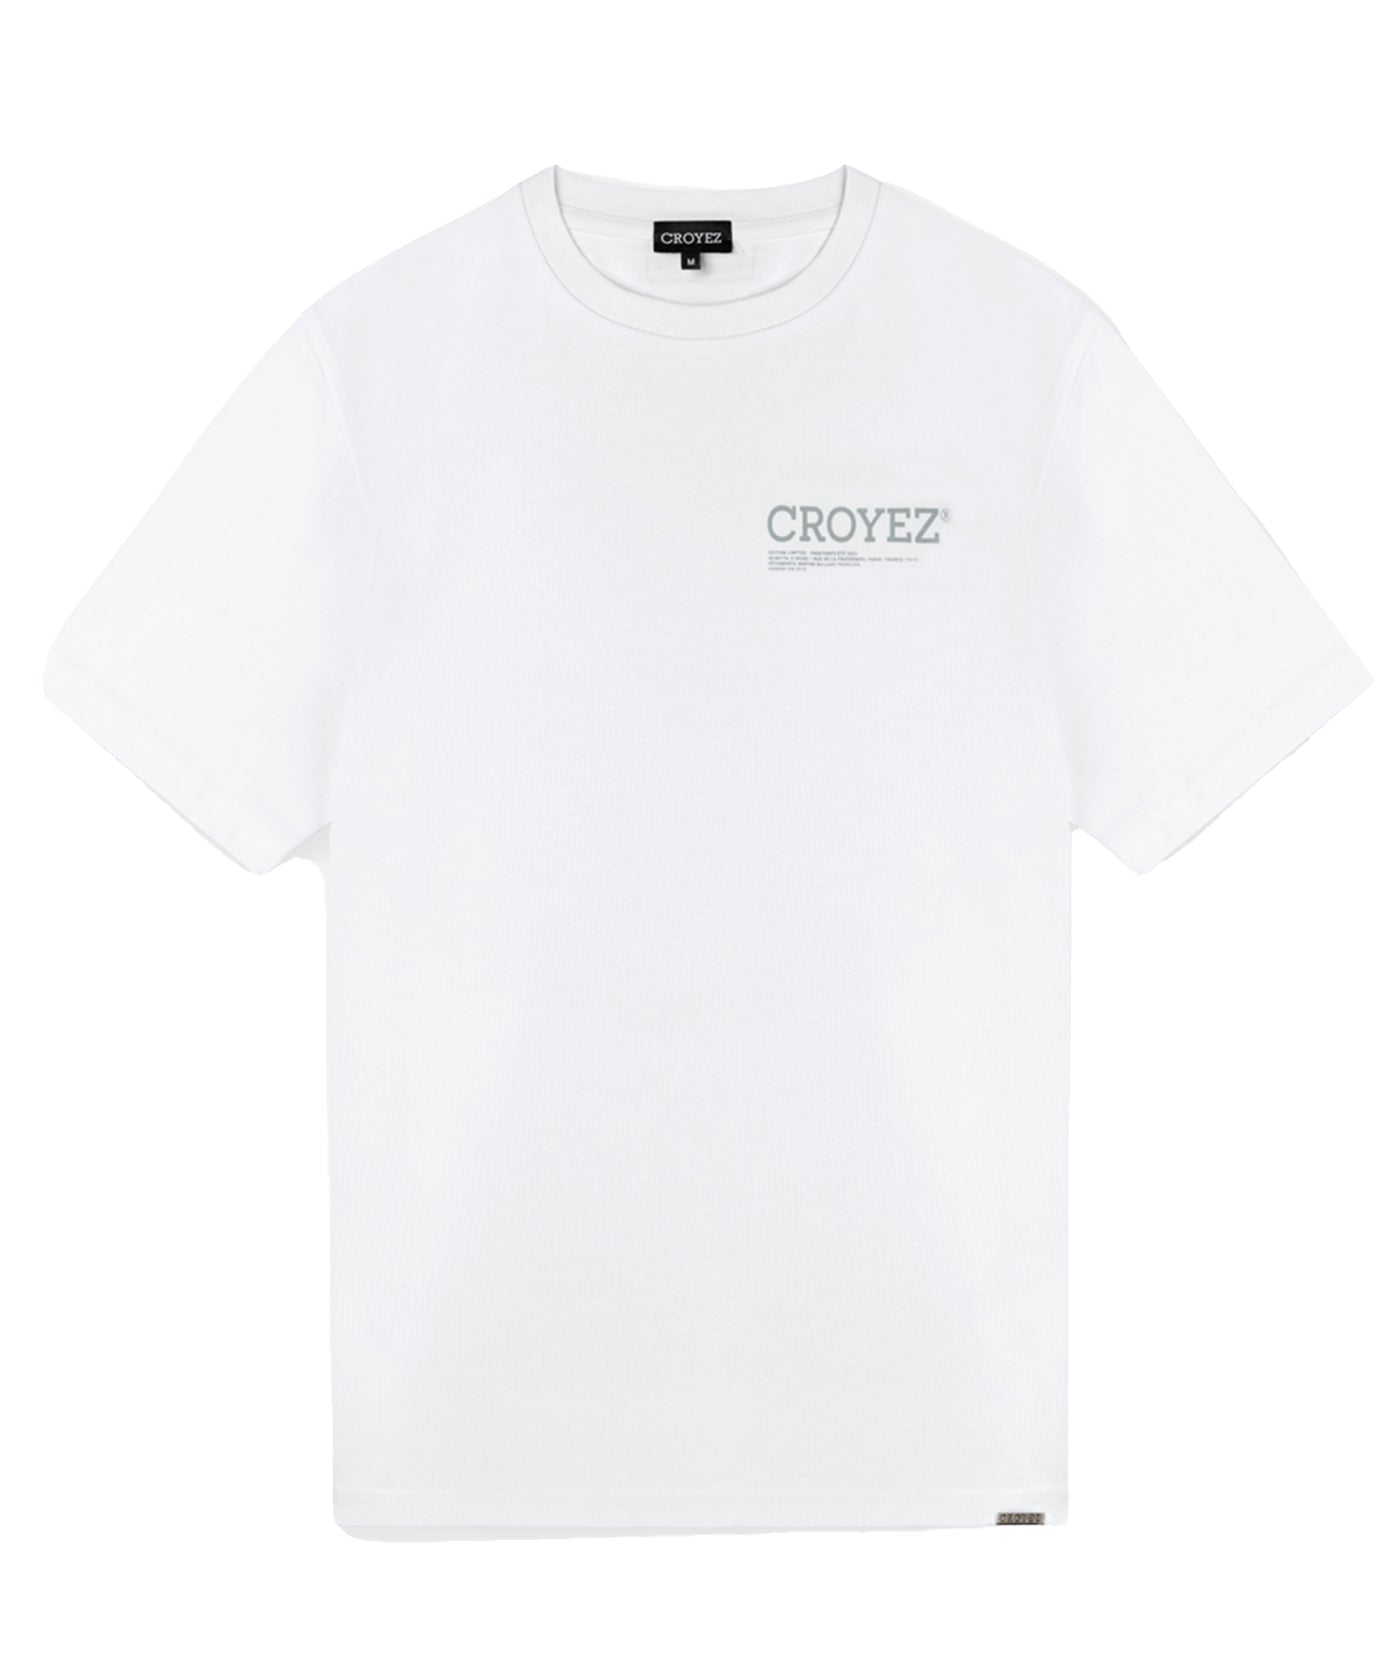 CROYEZ - Limitee - T-shirt - 972 White/bluesurf